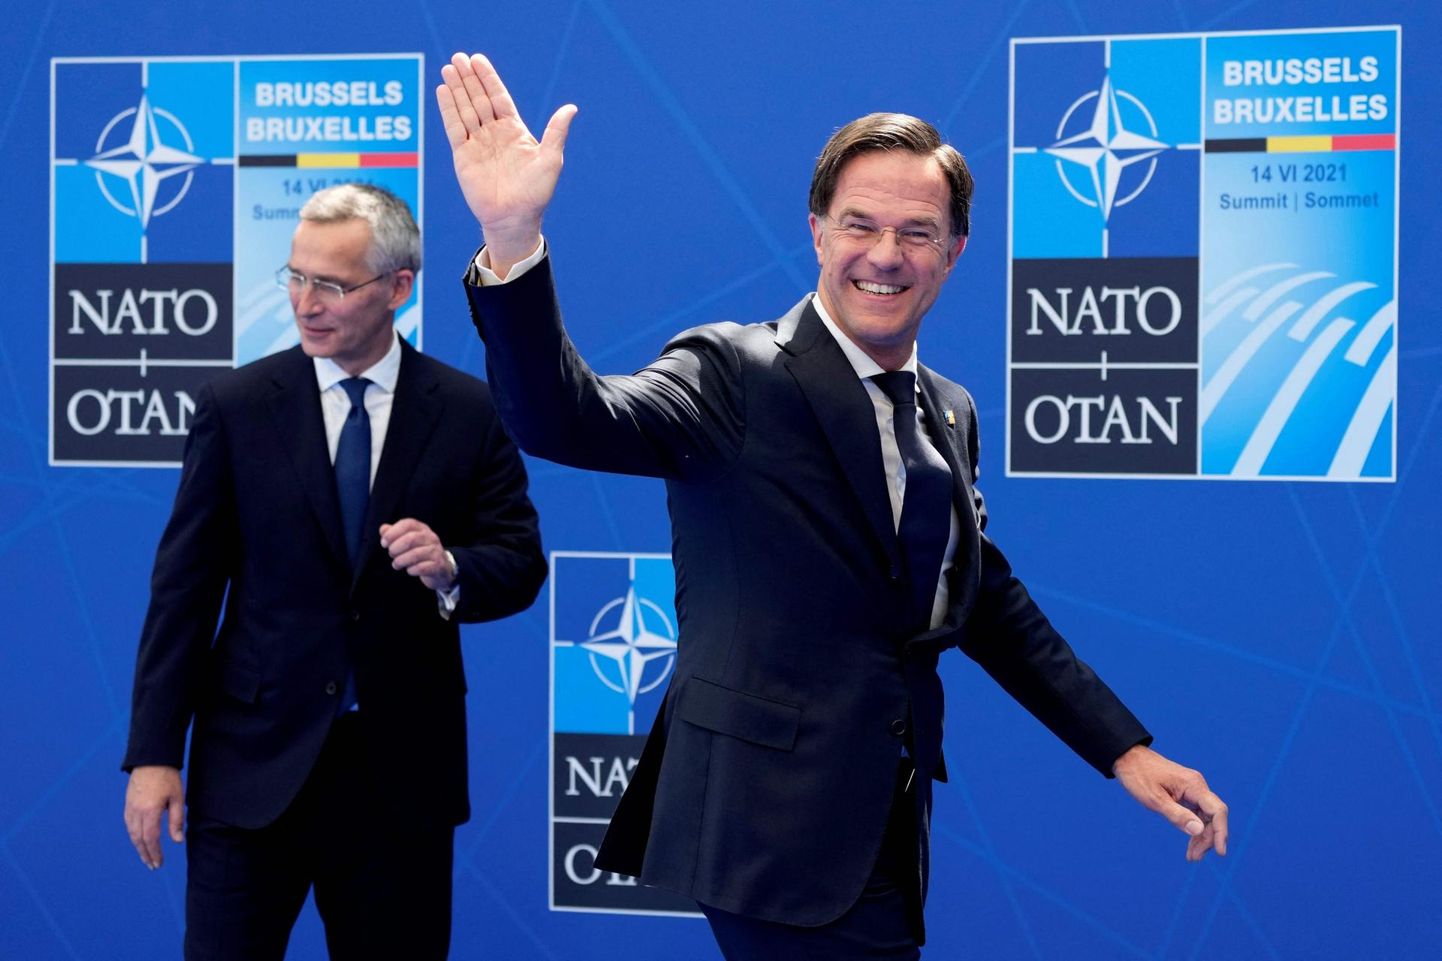 Hollandi ajutine peaminister Mark Rutte (paremal) on kõige tõenäolisem Jens Stoltenbergi (vasakul) matlipärija NATO peasekretäri kohale, kuna arvatakse, et võimeka suhtlejana suudaks ta allianssi kõige paremini triivida.